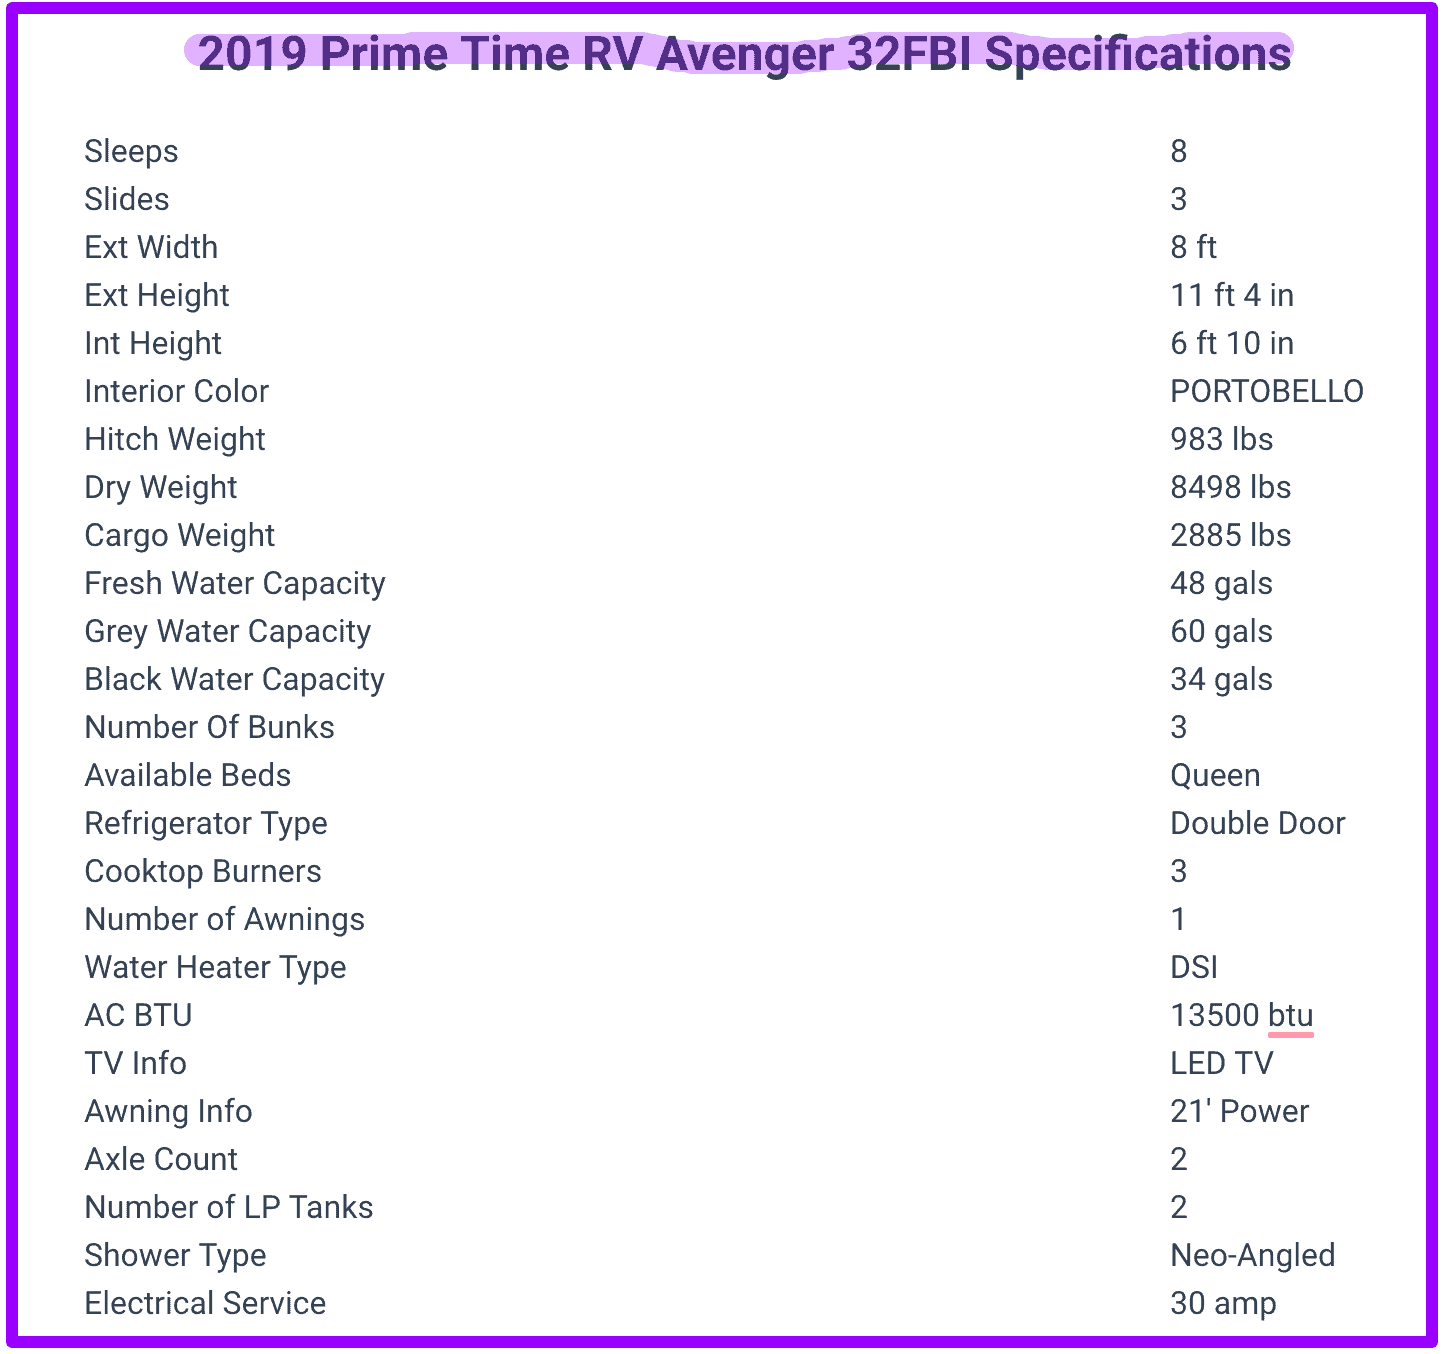 2019 Prime Time RV Avenger 32FBI specifications